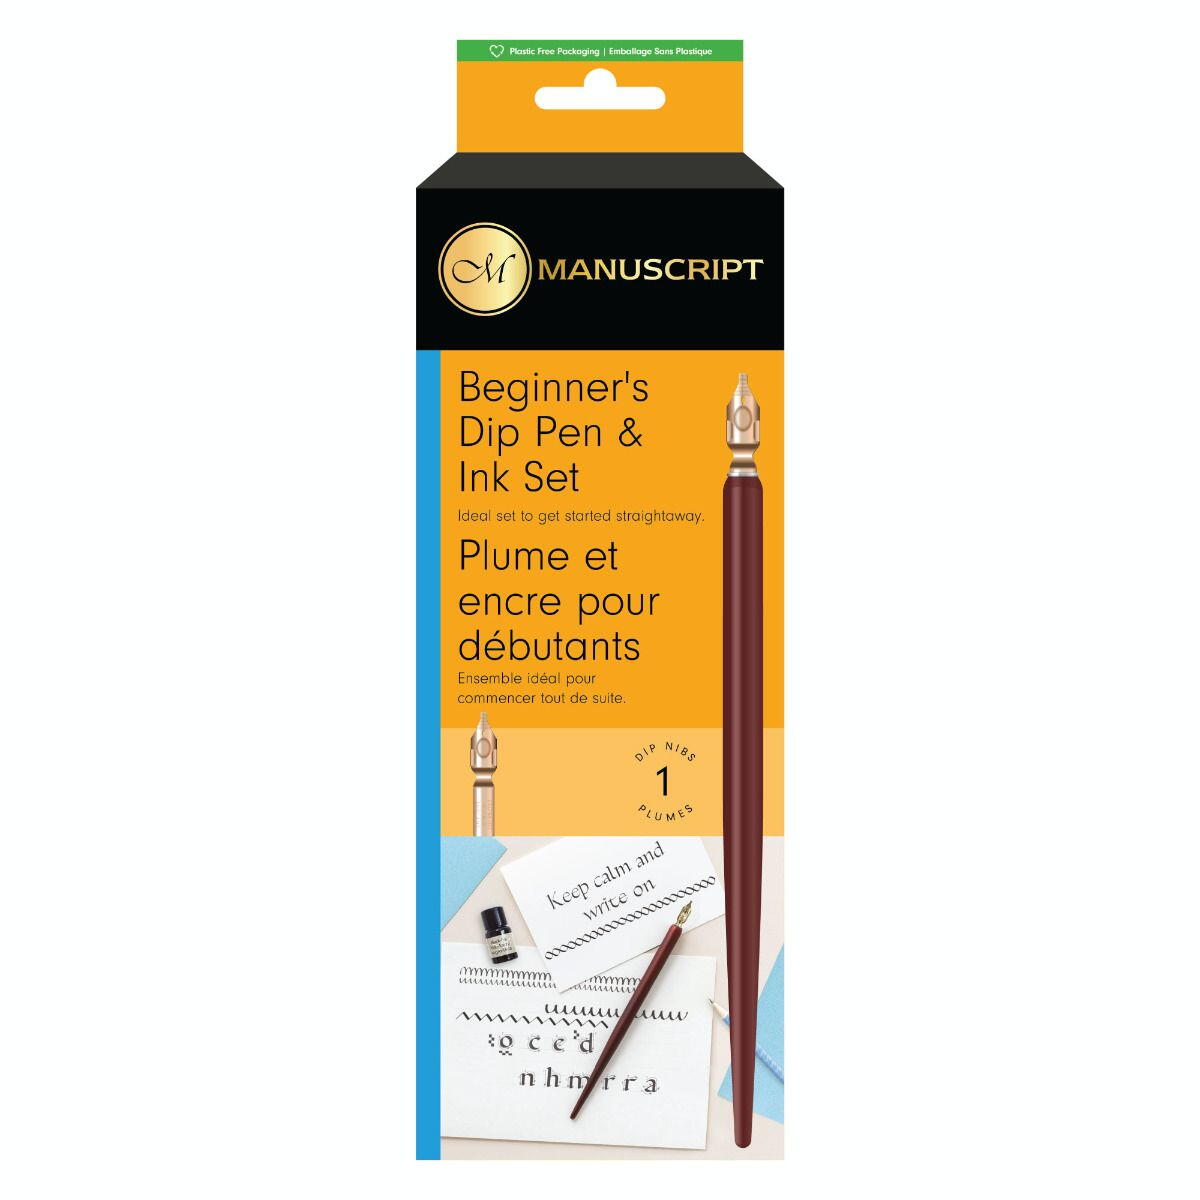 【その他Manuscript製品はこちら】 Manuscript は自社ブランドのカリグラフィー製品を世界中に販売するとともに、高級ペン、ギフト、文具業界で尊敬される数多くのブランドの英国代理店としても活動しているブランドです。 Beginner's Dip Pen & Ink Setはつけペン カリグラフィーを試すのに最適なスターター キットです。 英国製 Leonardt 丸型ペン先、つけペンホルダー、黒インクが付属しているので、すぐに使い始めることができます。 使用後は、腐食を防ぐためにペン先をよく洗って乾燥させてください。 100%リサイクル可能なボードを使用し、持続可能な未来を実現するプラスチックフリーのパッケージを採用しています。 【セット内容】 ■ストレートホルダー　1本 ■ブラックインク　1本 ■ニブ　1本（45607）　